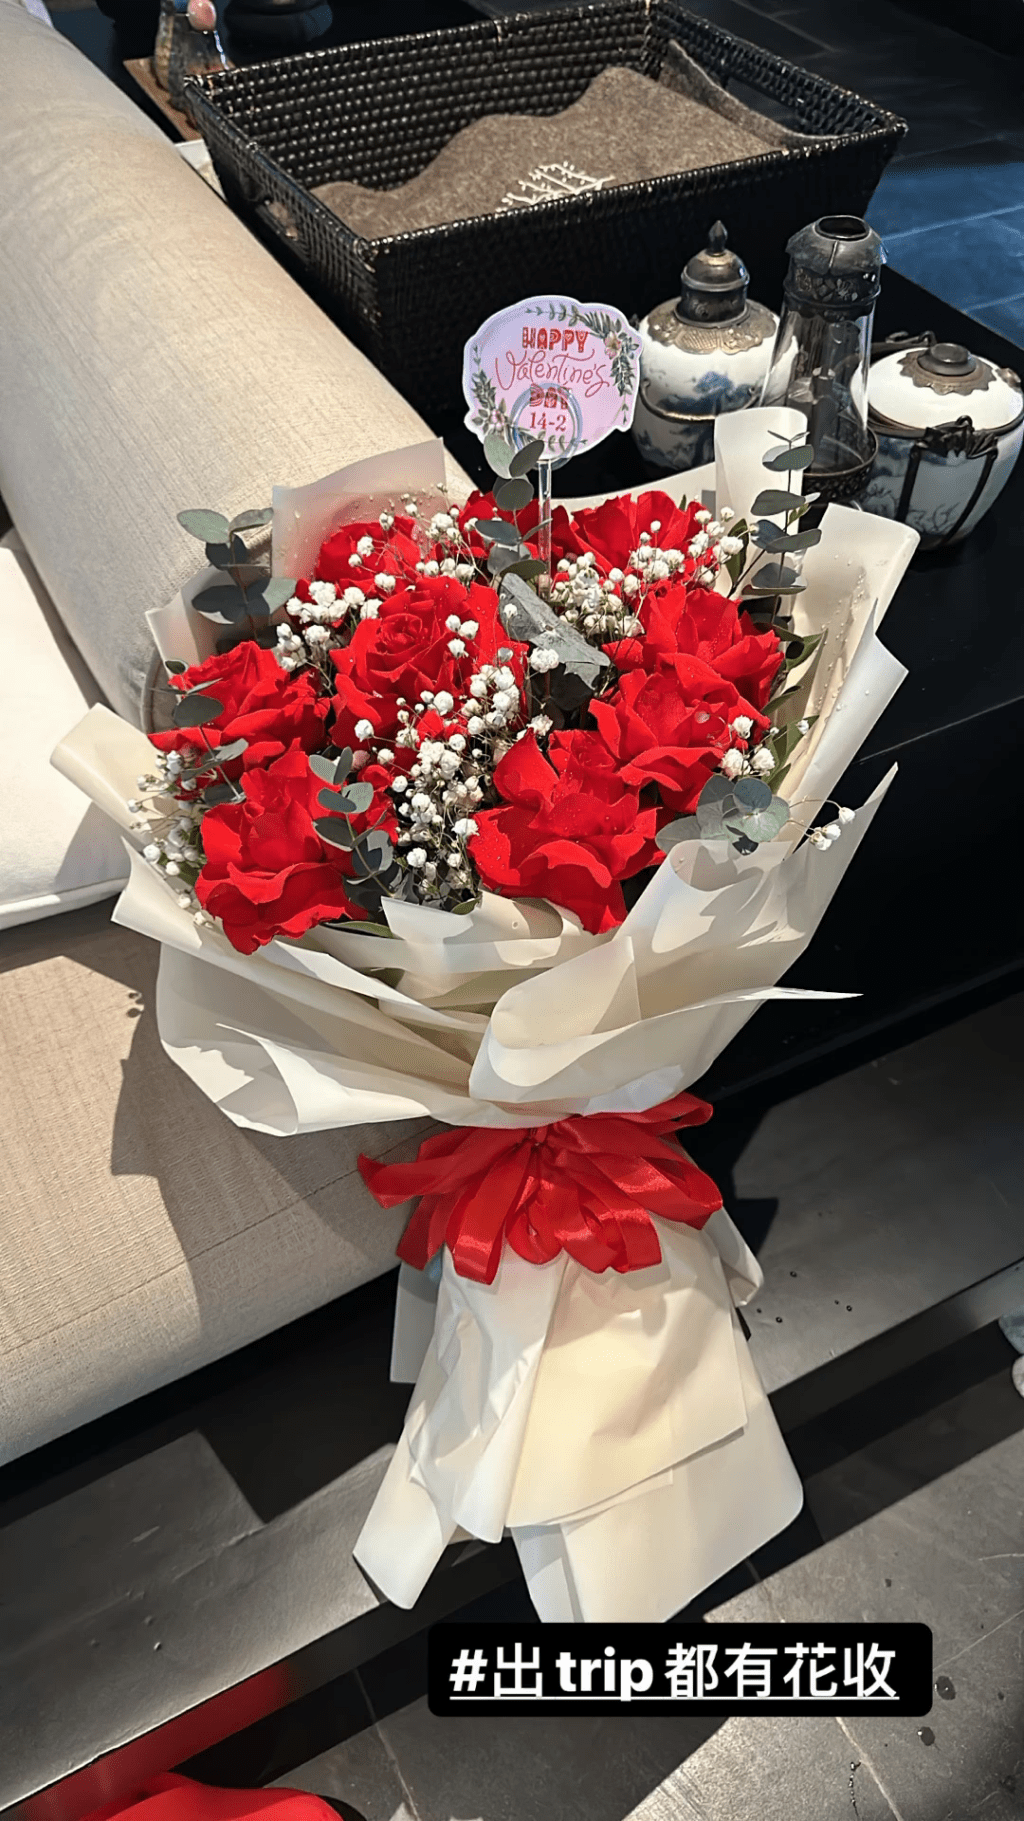 翁嘉穗貼出一束紅玫瑰照，並冧爆寫道：「出Trip都有花收。」相信是丈夫鄔友正製造的浪漫驚喜。